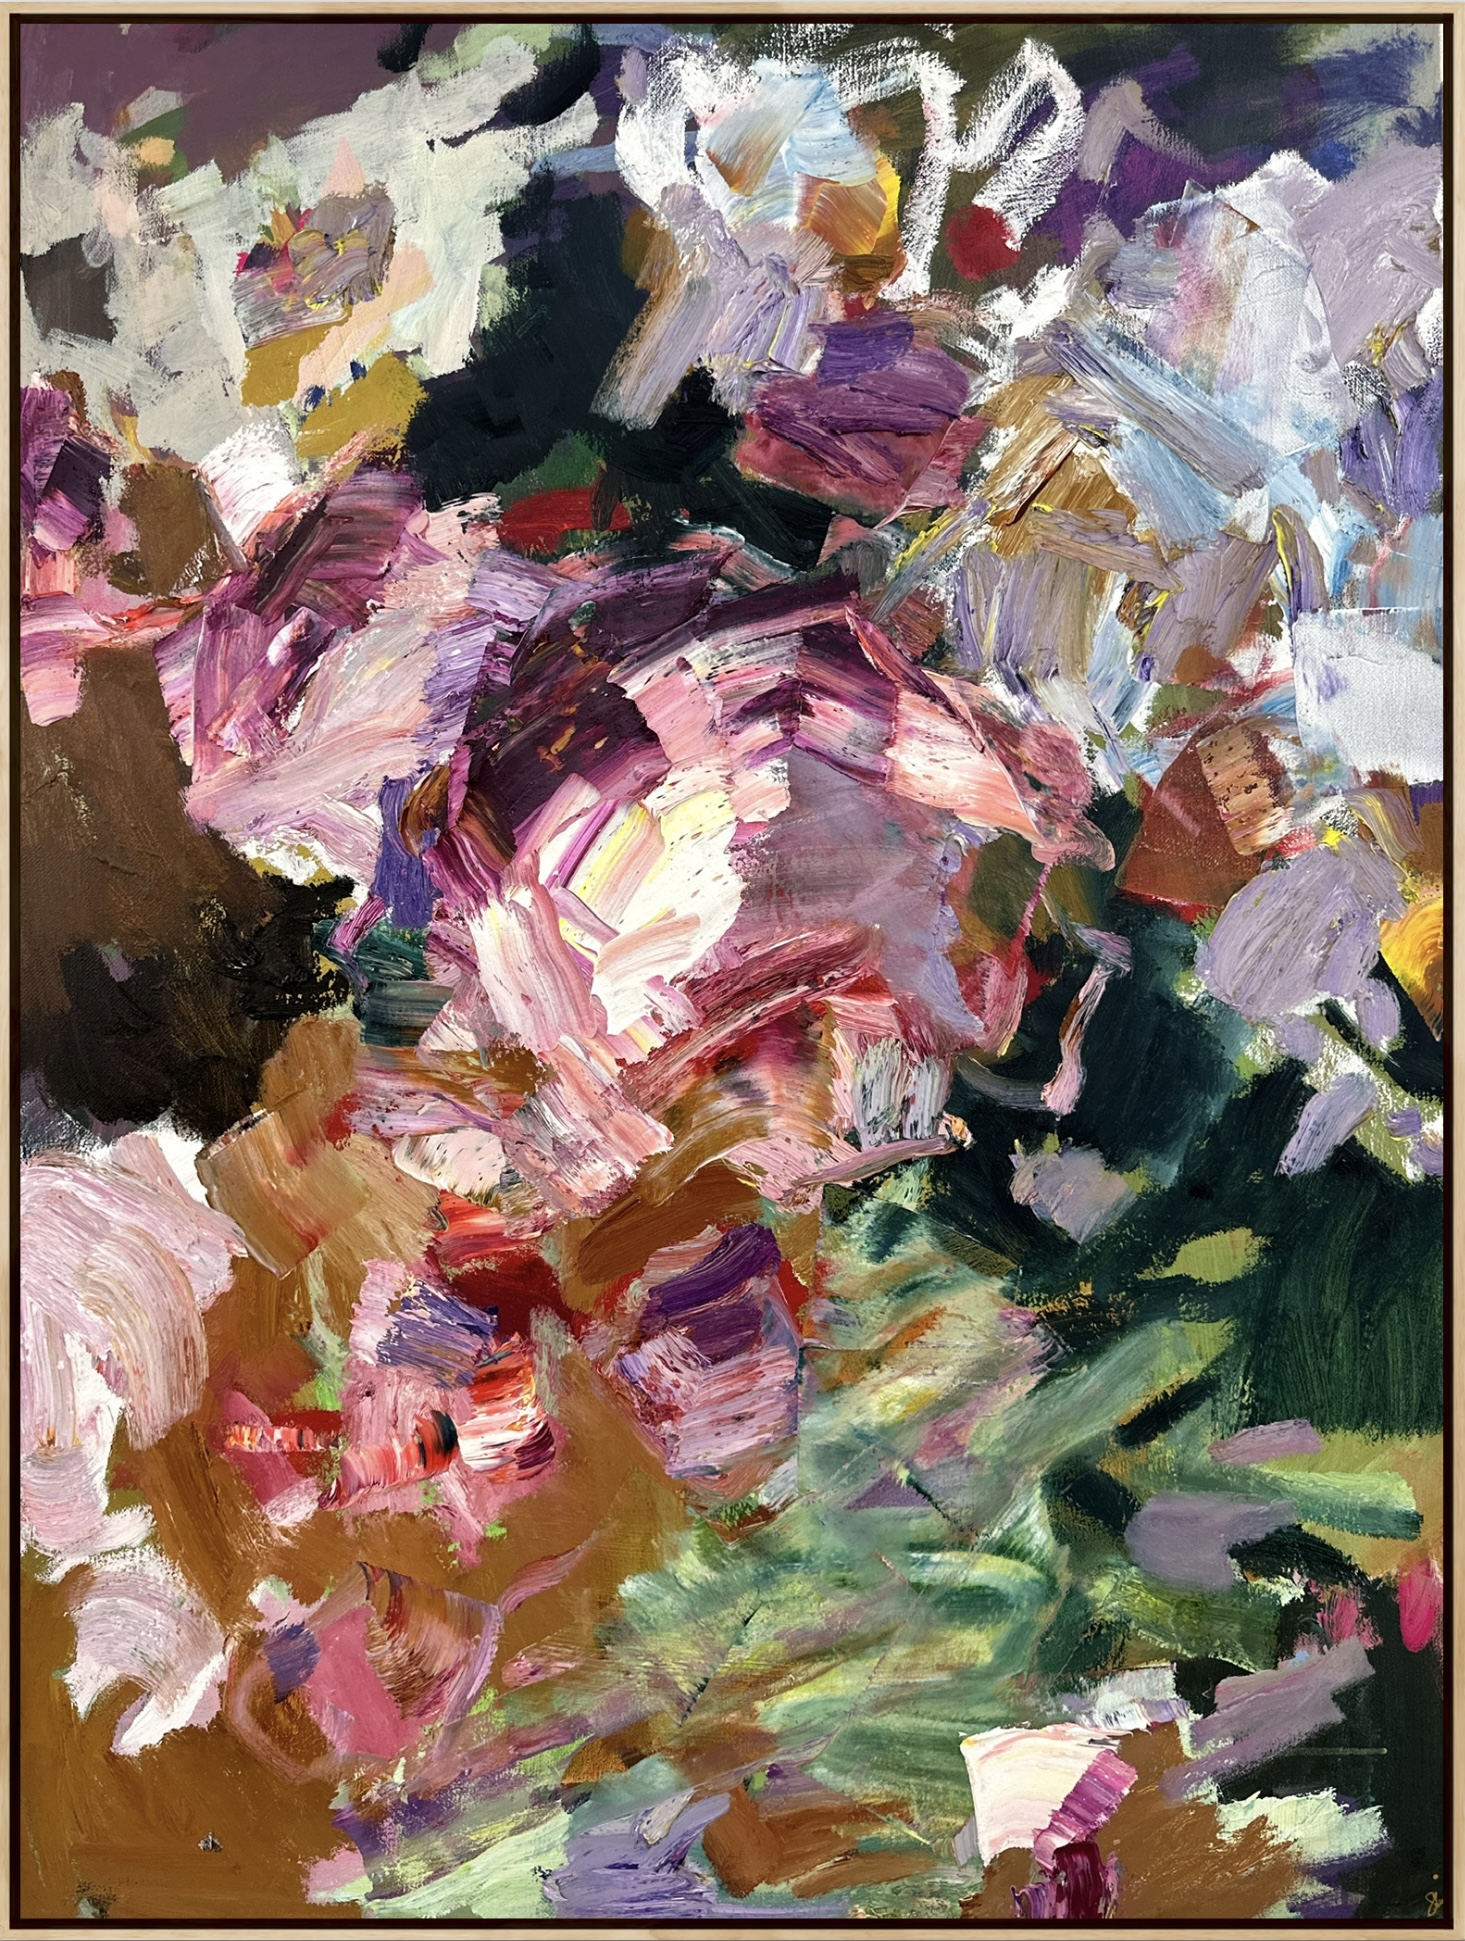 The-Allegory-Of-Flowers-Llewellyn-Skye-oil-and-acrylic-on-linen-126x95cm-framed-in-oak-6000jpg